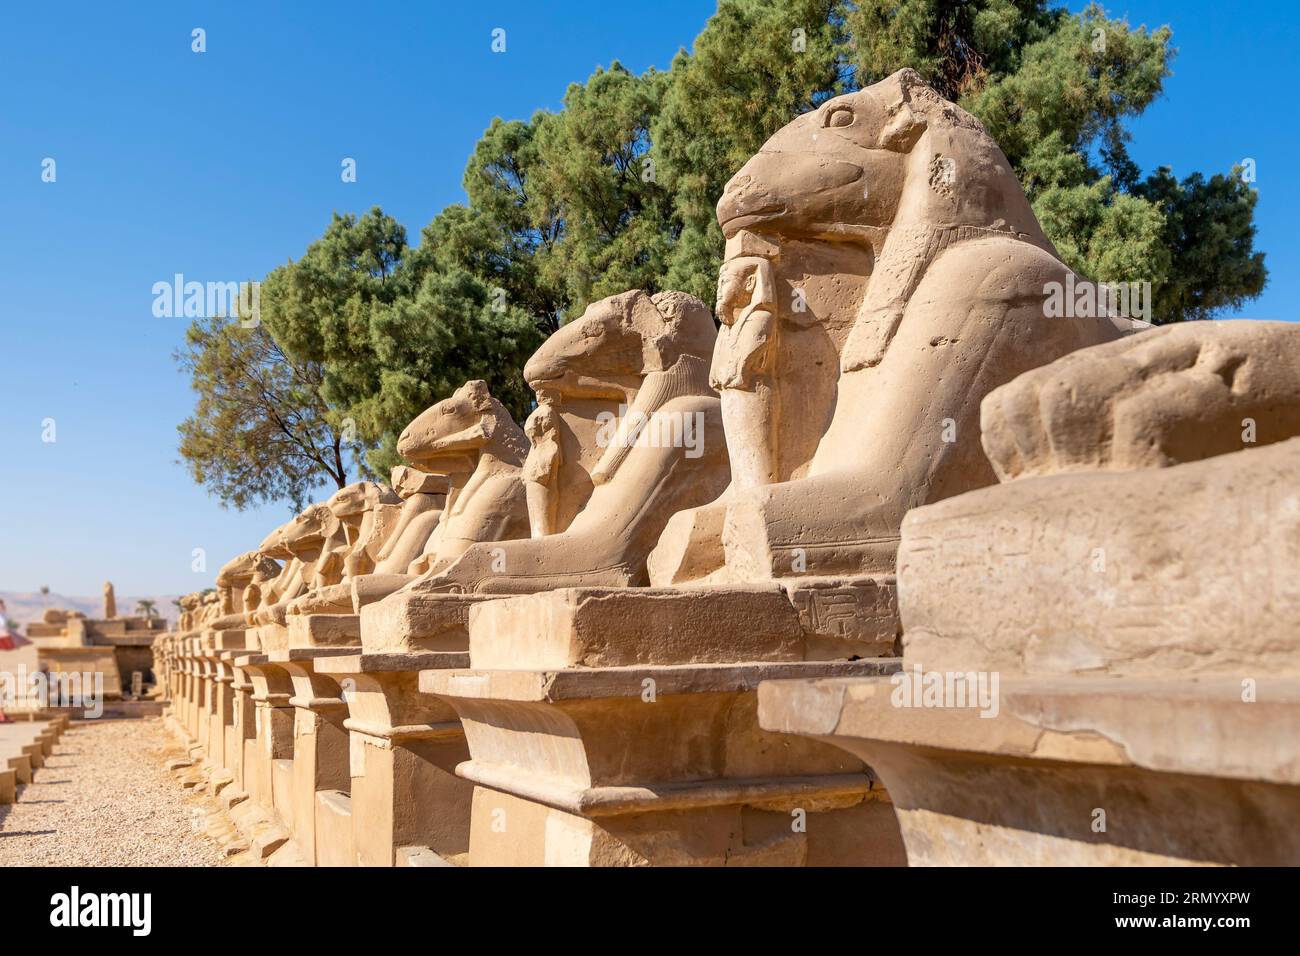 Die Avenue of Sphinxes oder die King's Festivities Road, auch bekannt als Rams Road, ist eine 2,7 km lange Allee, die den Karnak-Tempel mit dem Luxor-Tempel verbindet. Stockfoto